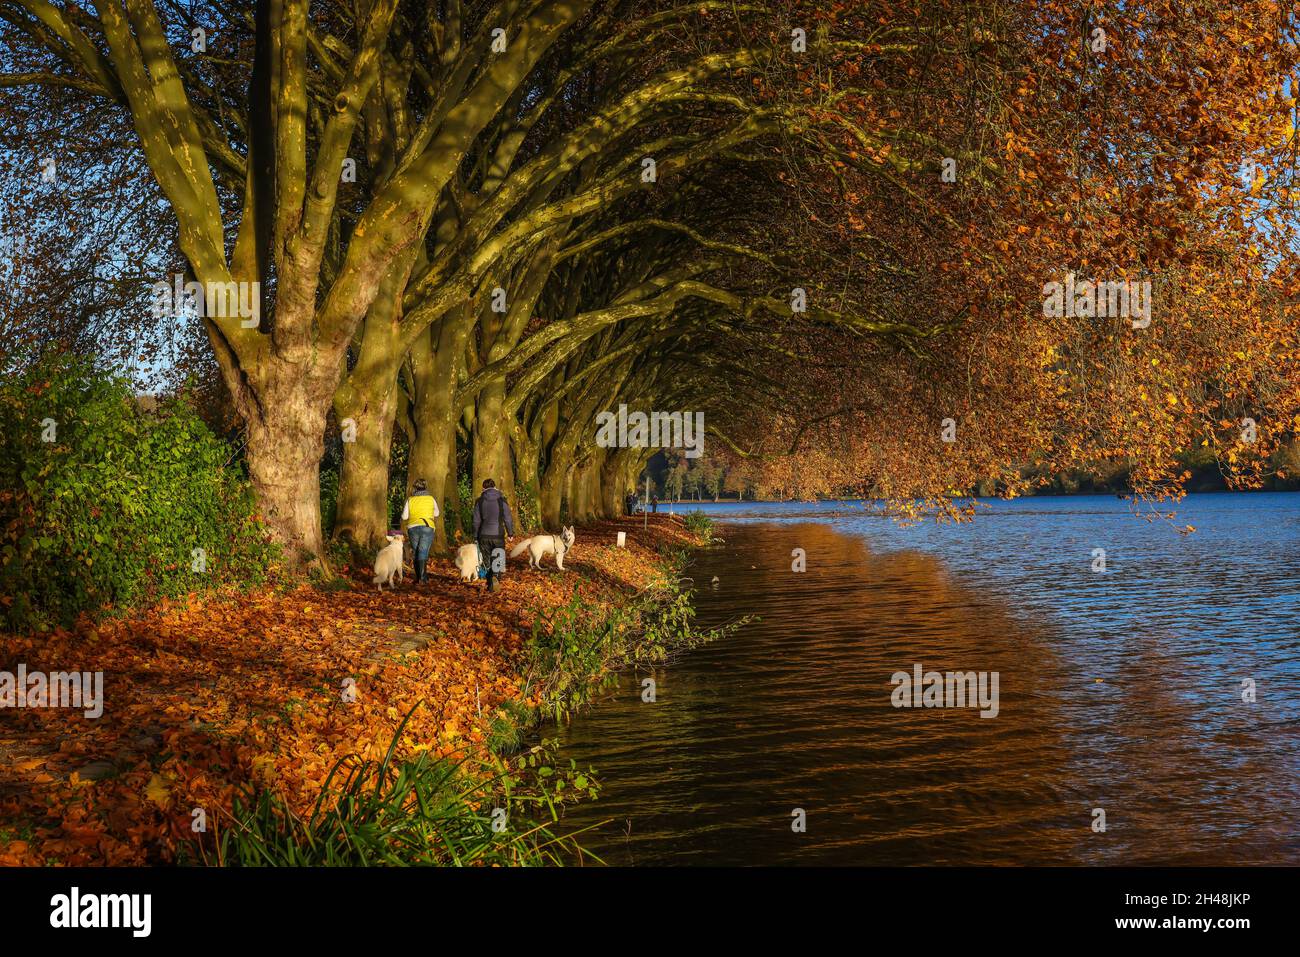 Essen, Nordrhein-Westfalen, Deutschland - Hundebesitzer laufen am Seeufer unter Bäumen mit Herbstblättern. Goldener Herbst am Baldeneysee. Stockfoto